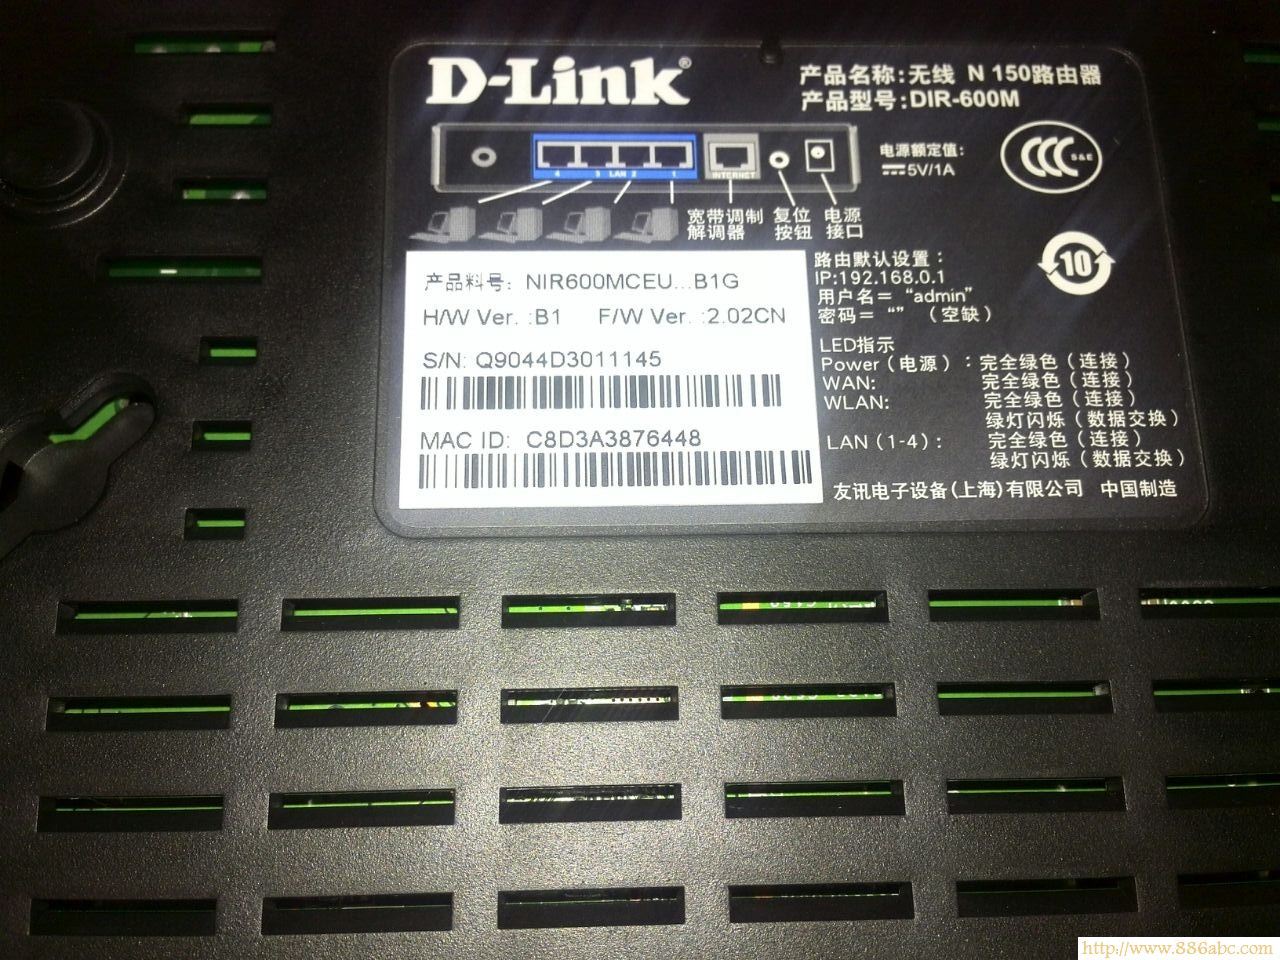 D-Link设置,192.168.1.1 用户名,无线路由器,笔记本电脑的品牌,限速软件,设置路由器